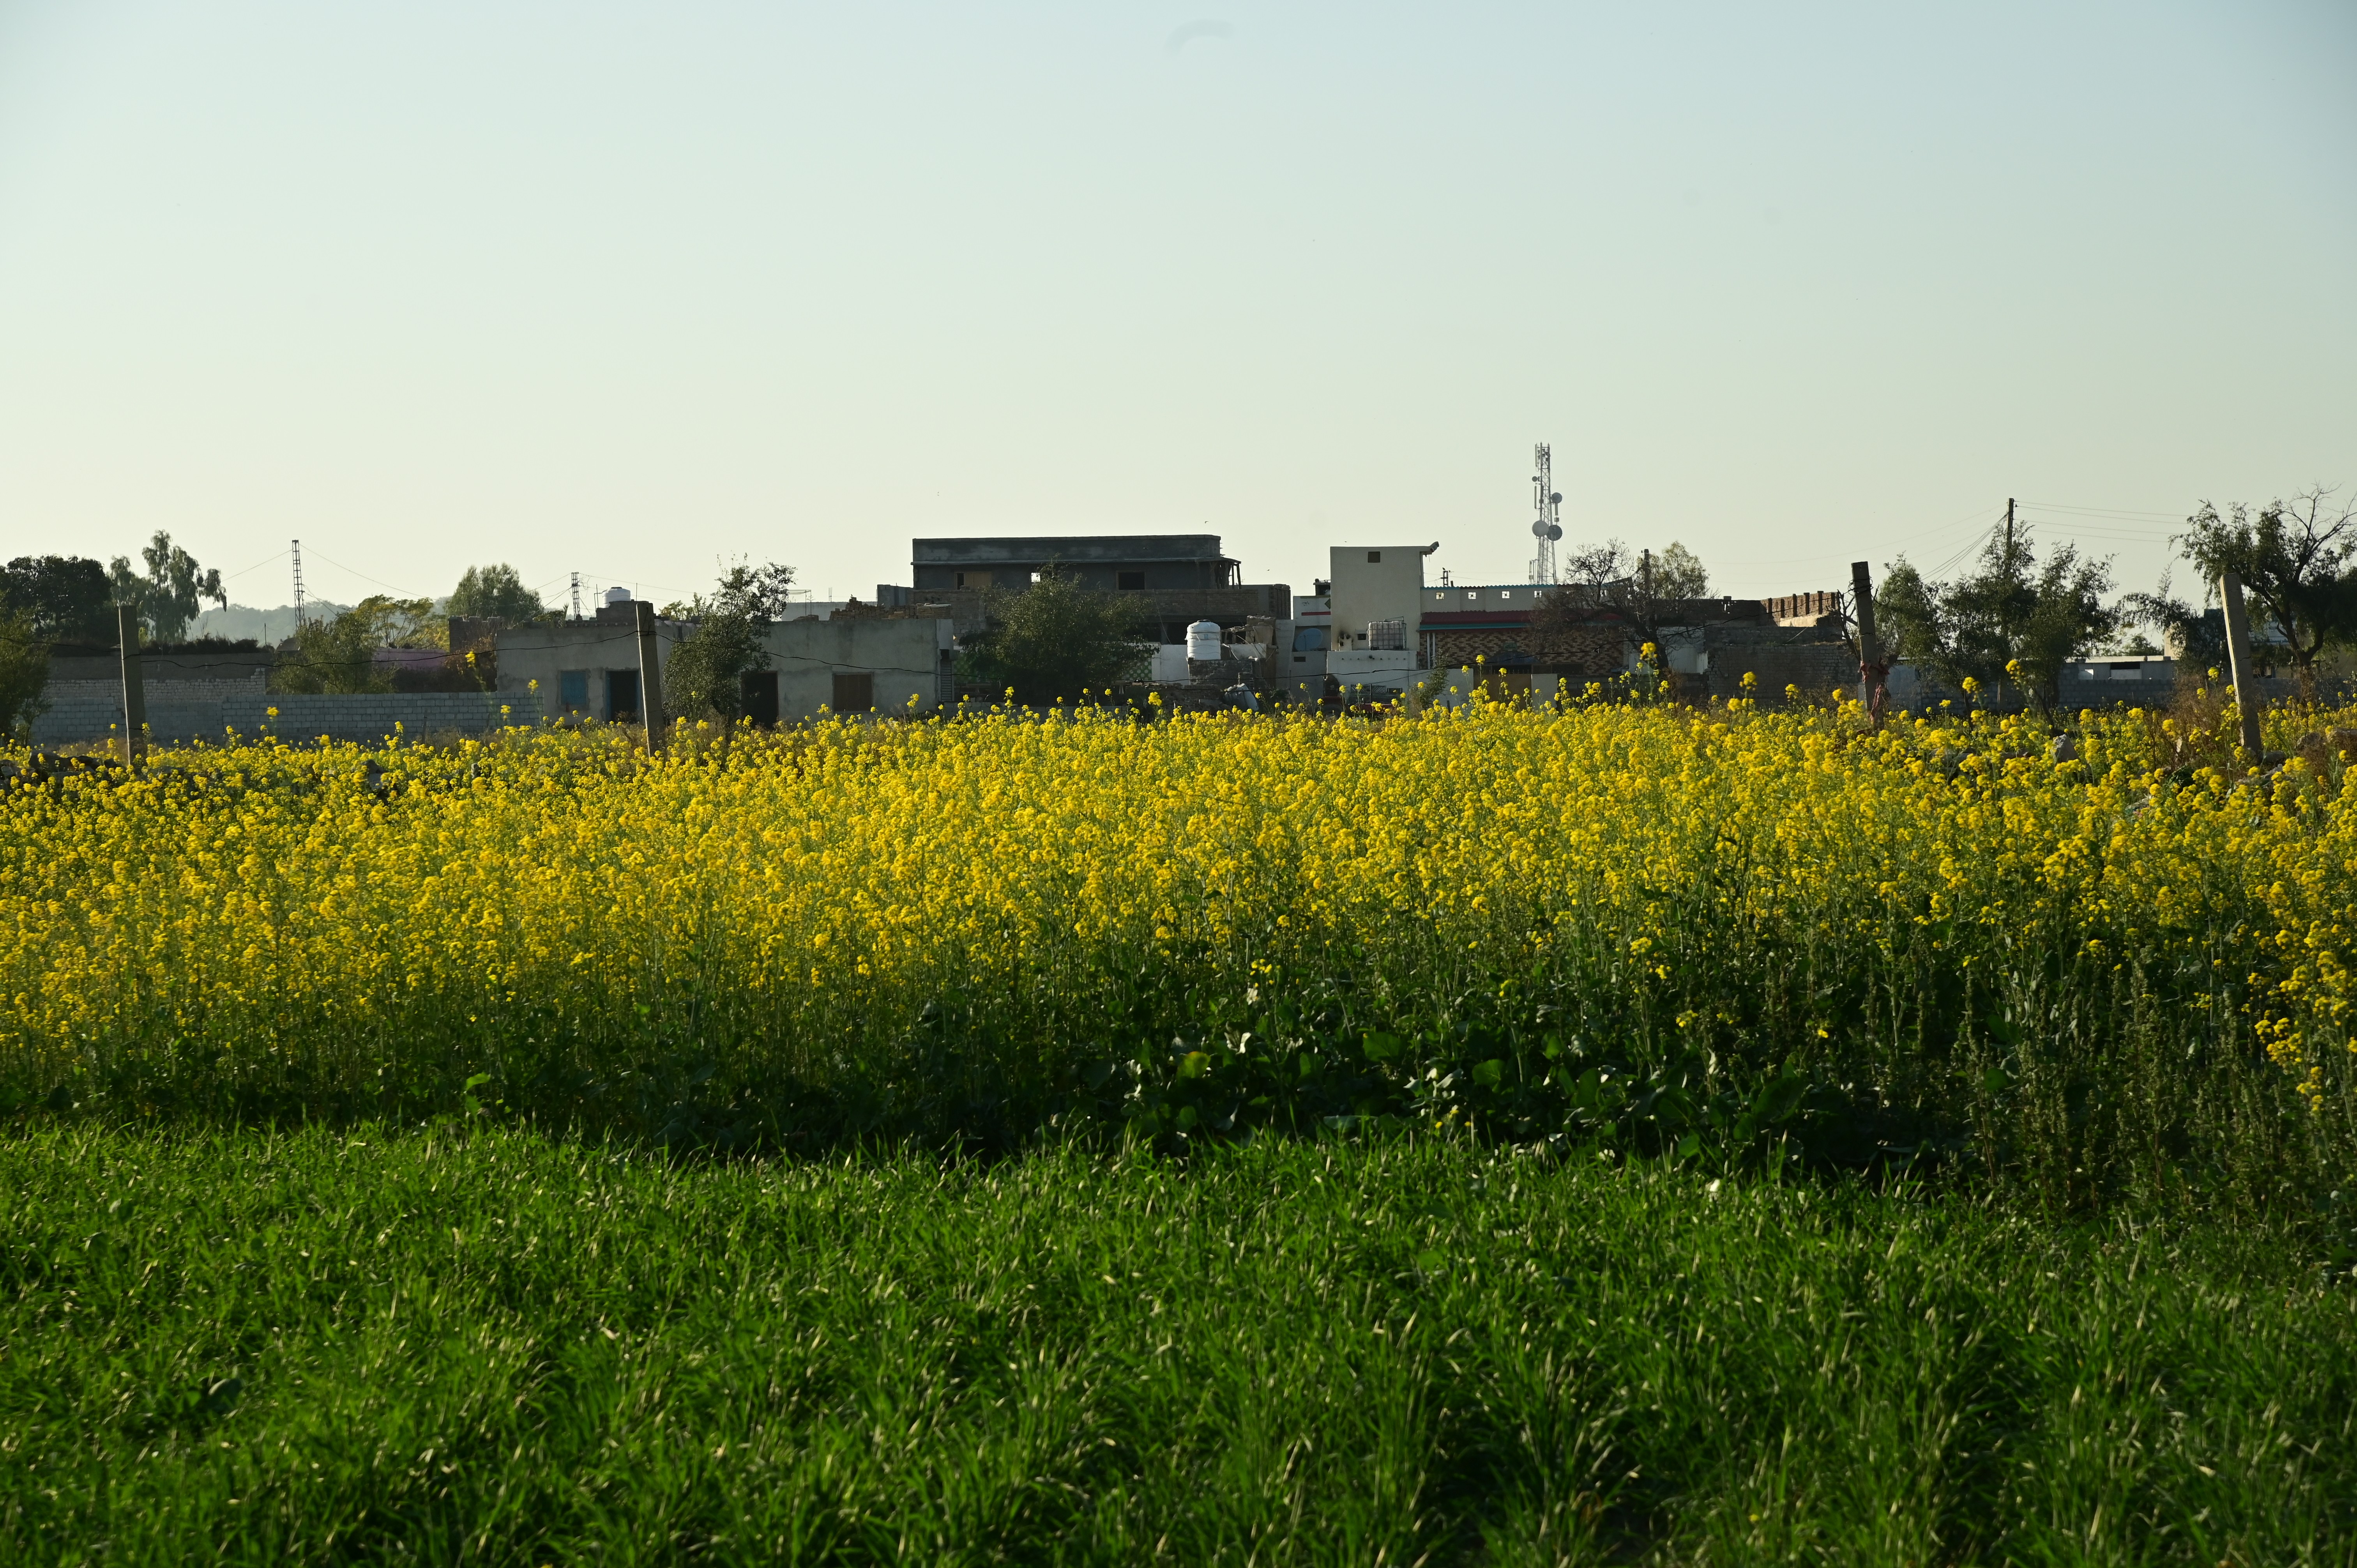 The mustard fields